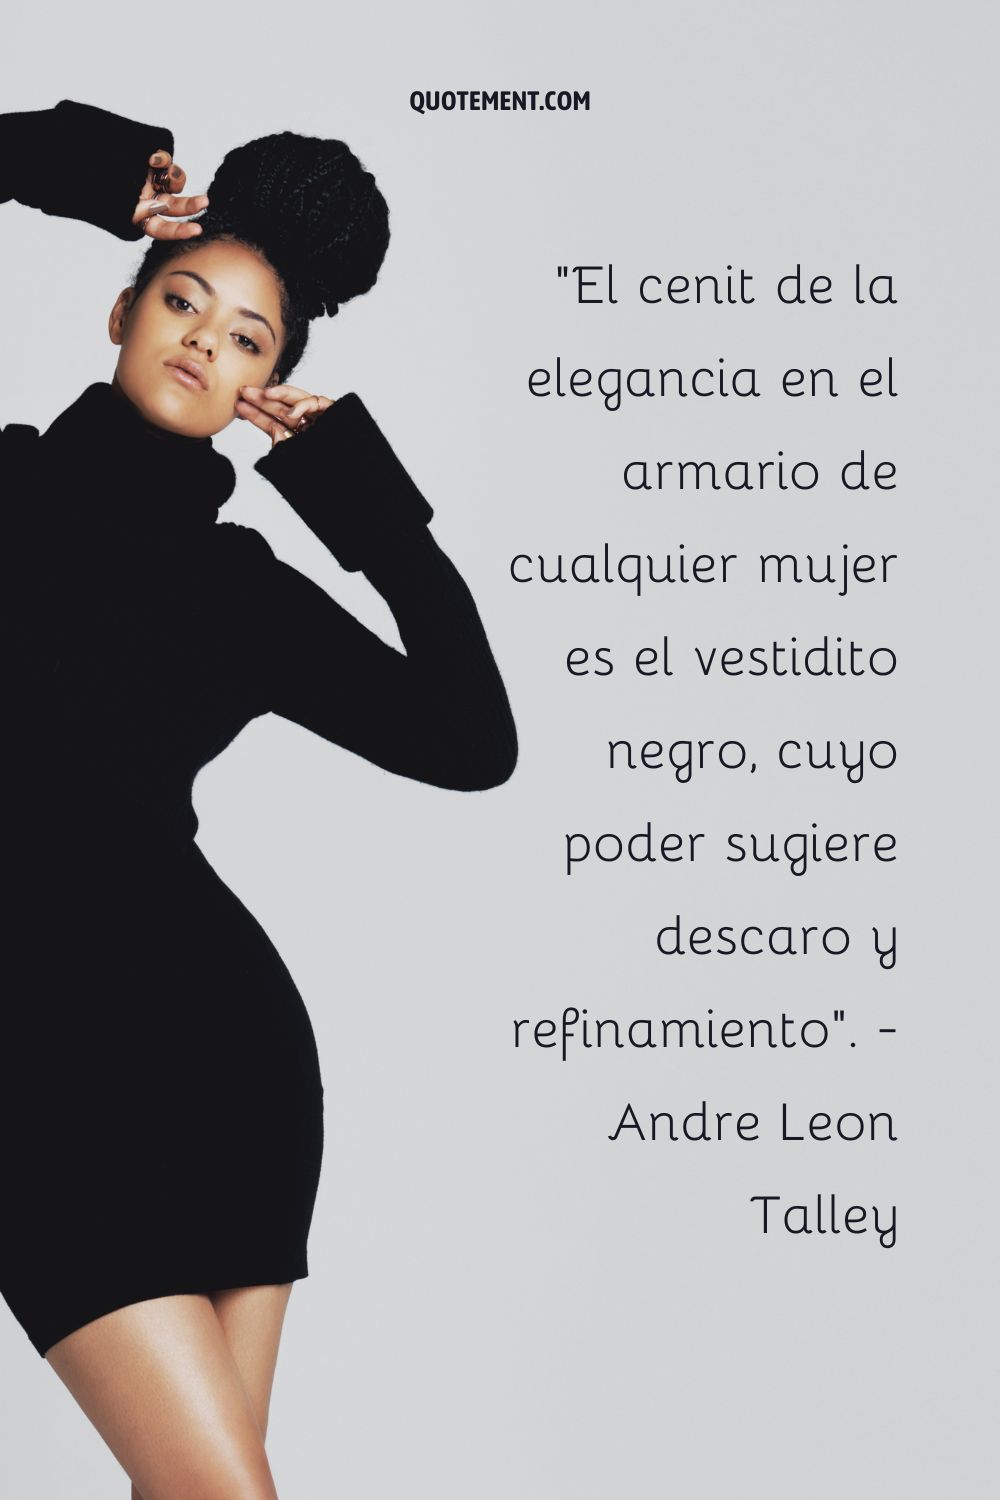 "El cenit de la elegancia en el guardarropa de cualquier mujer es el vestidito negro, cuyo poder sugiere descaro y refinamiento". - André Leon Talley